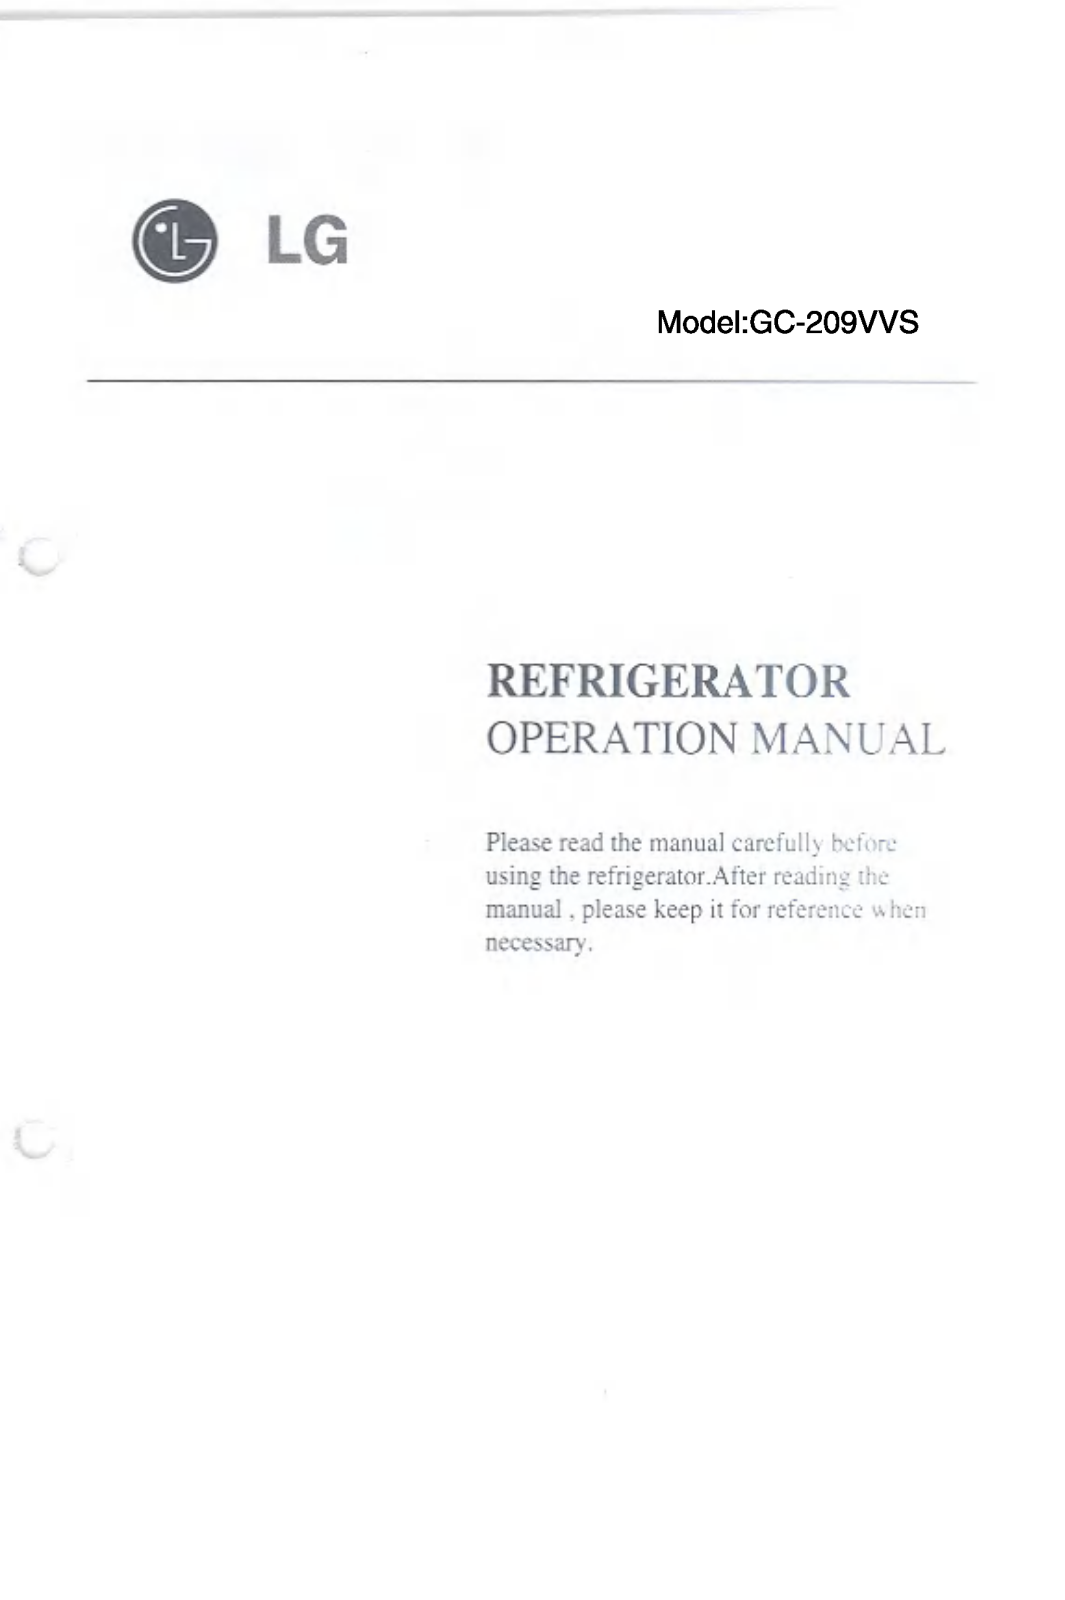 LG GC-209VVS Owner’s Manual